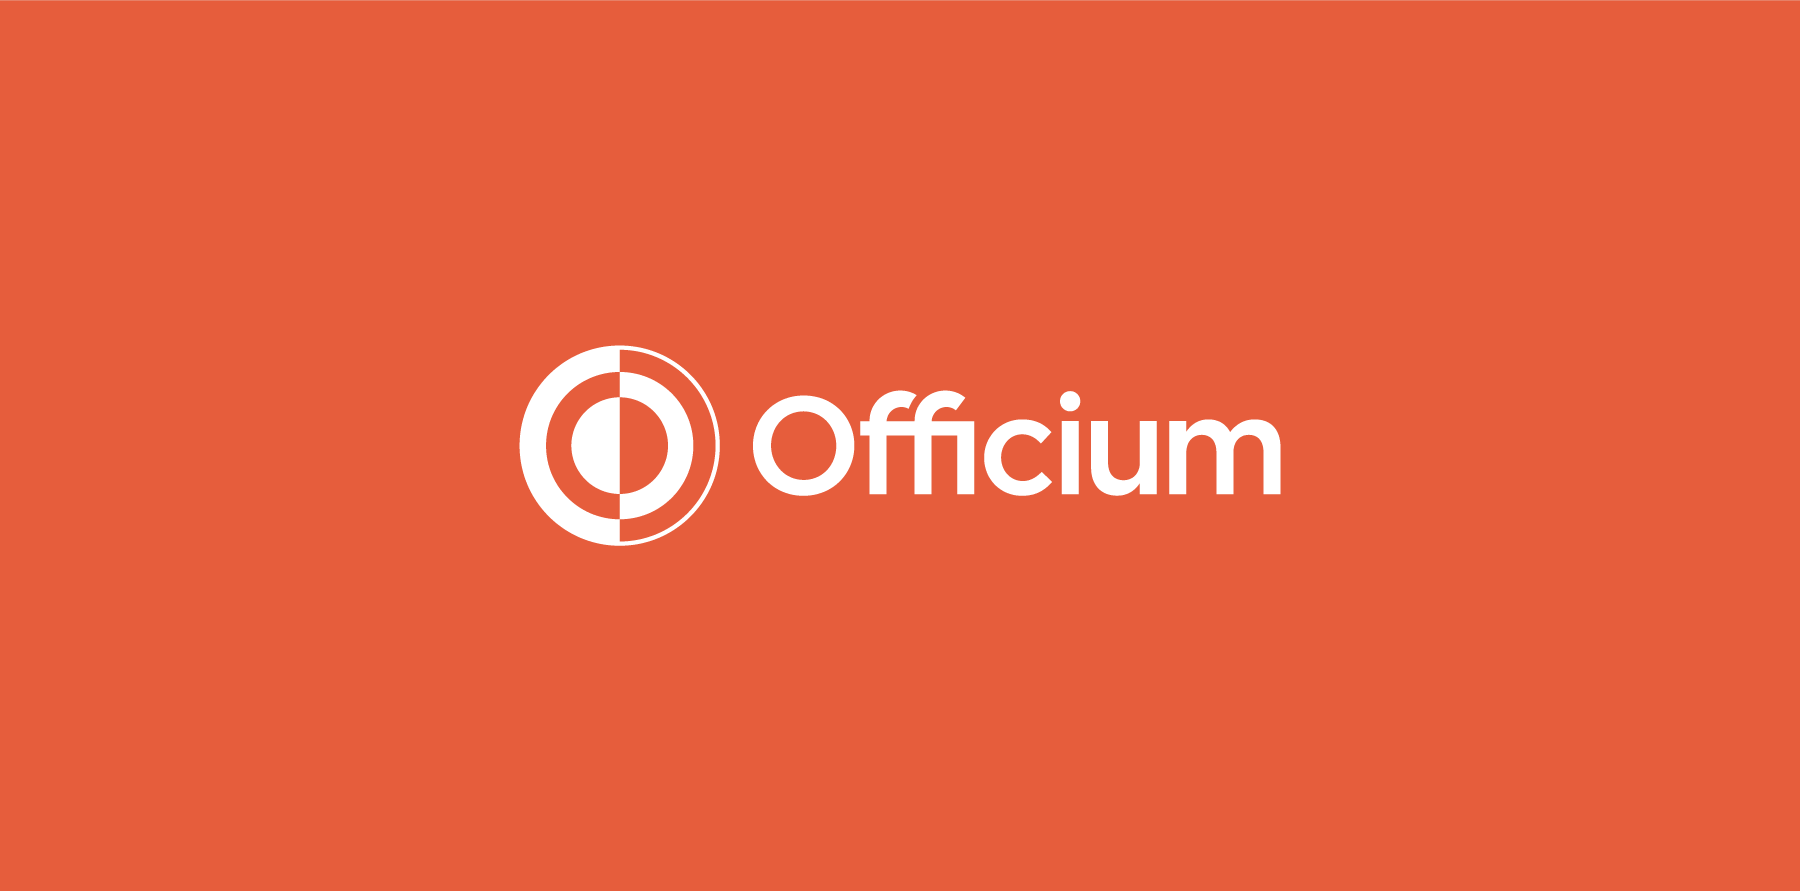 Officium-Brand-Identity